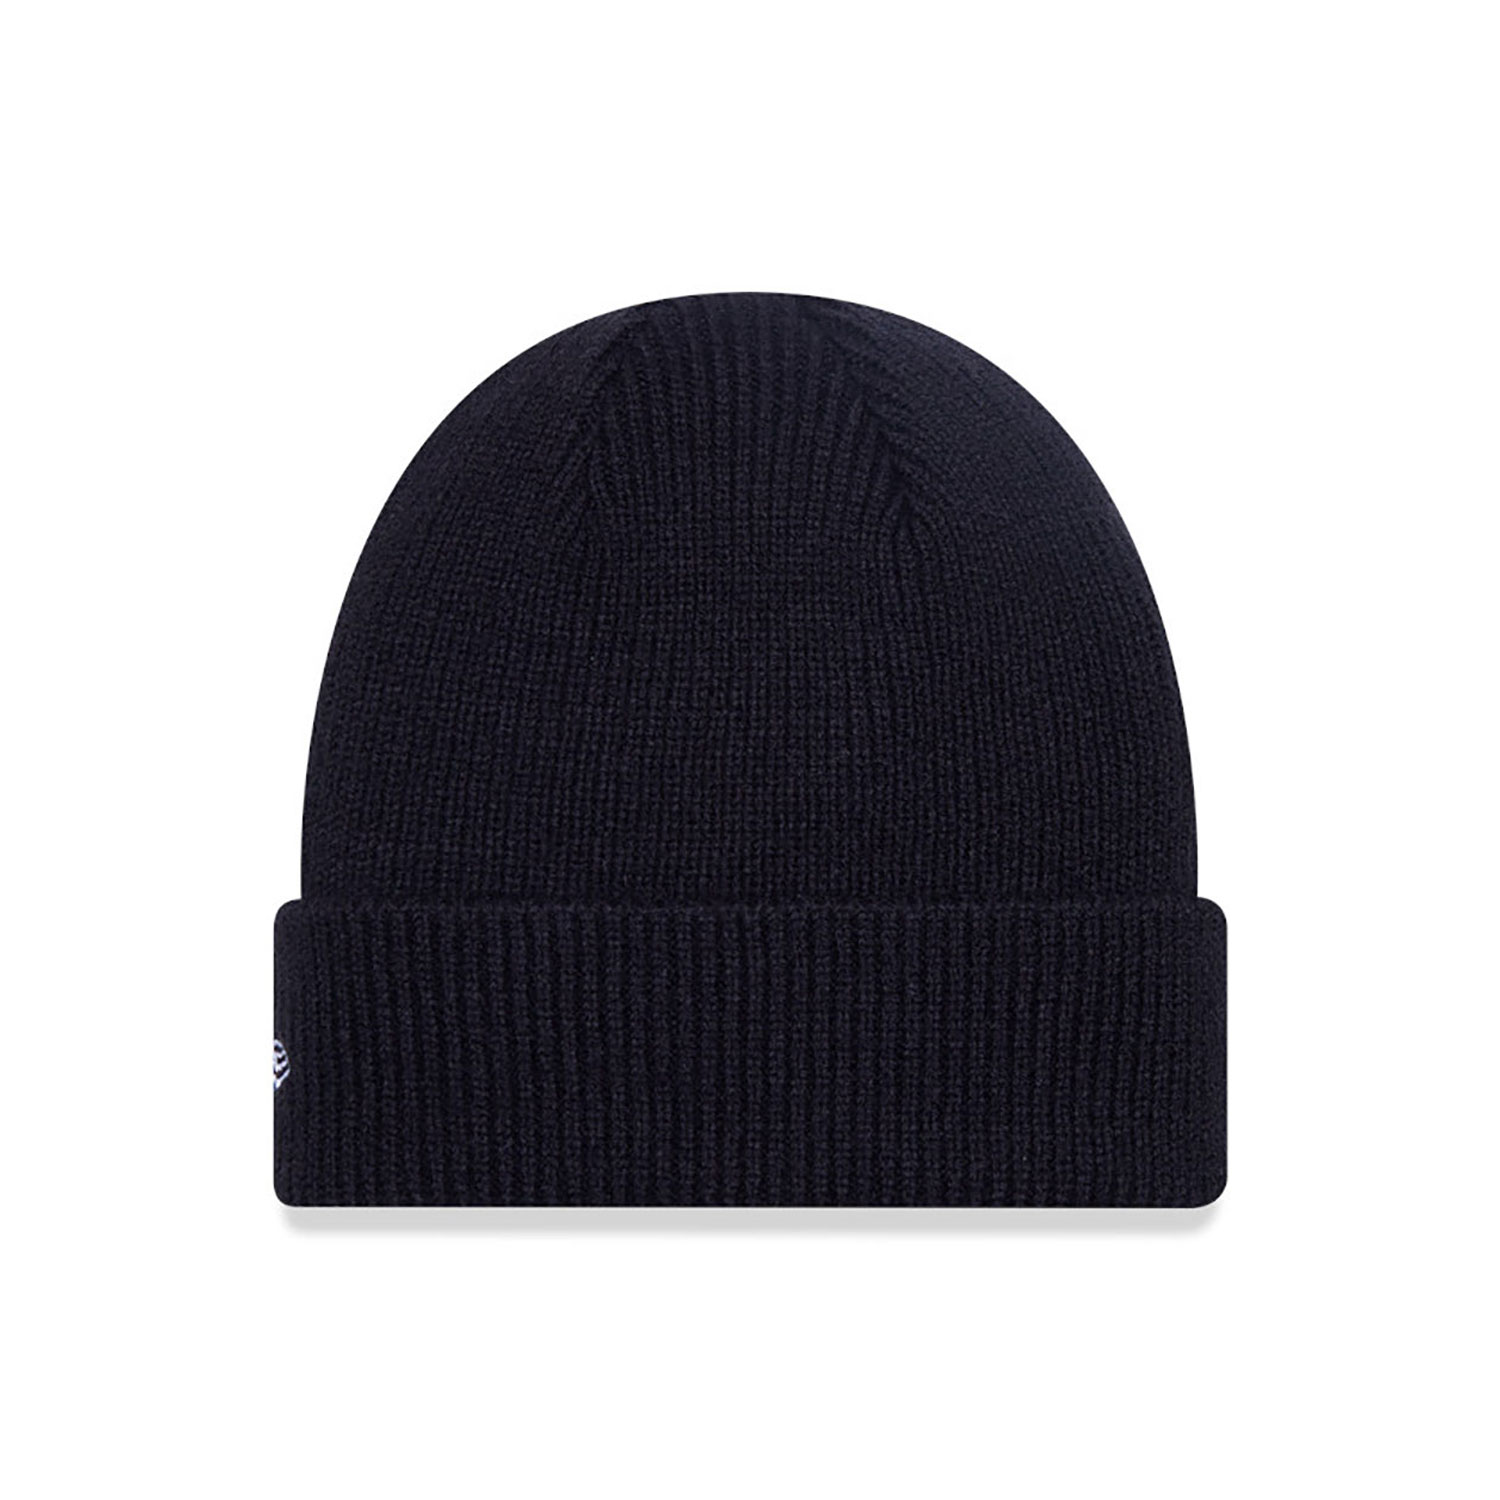 New Era Wool Black Cuff Knit Beanie Hat